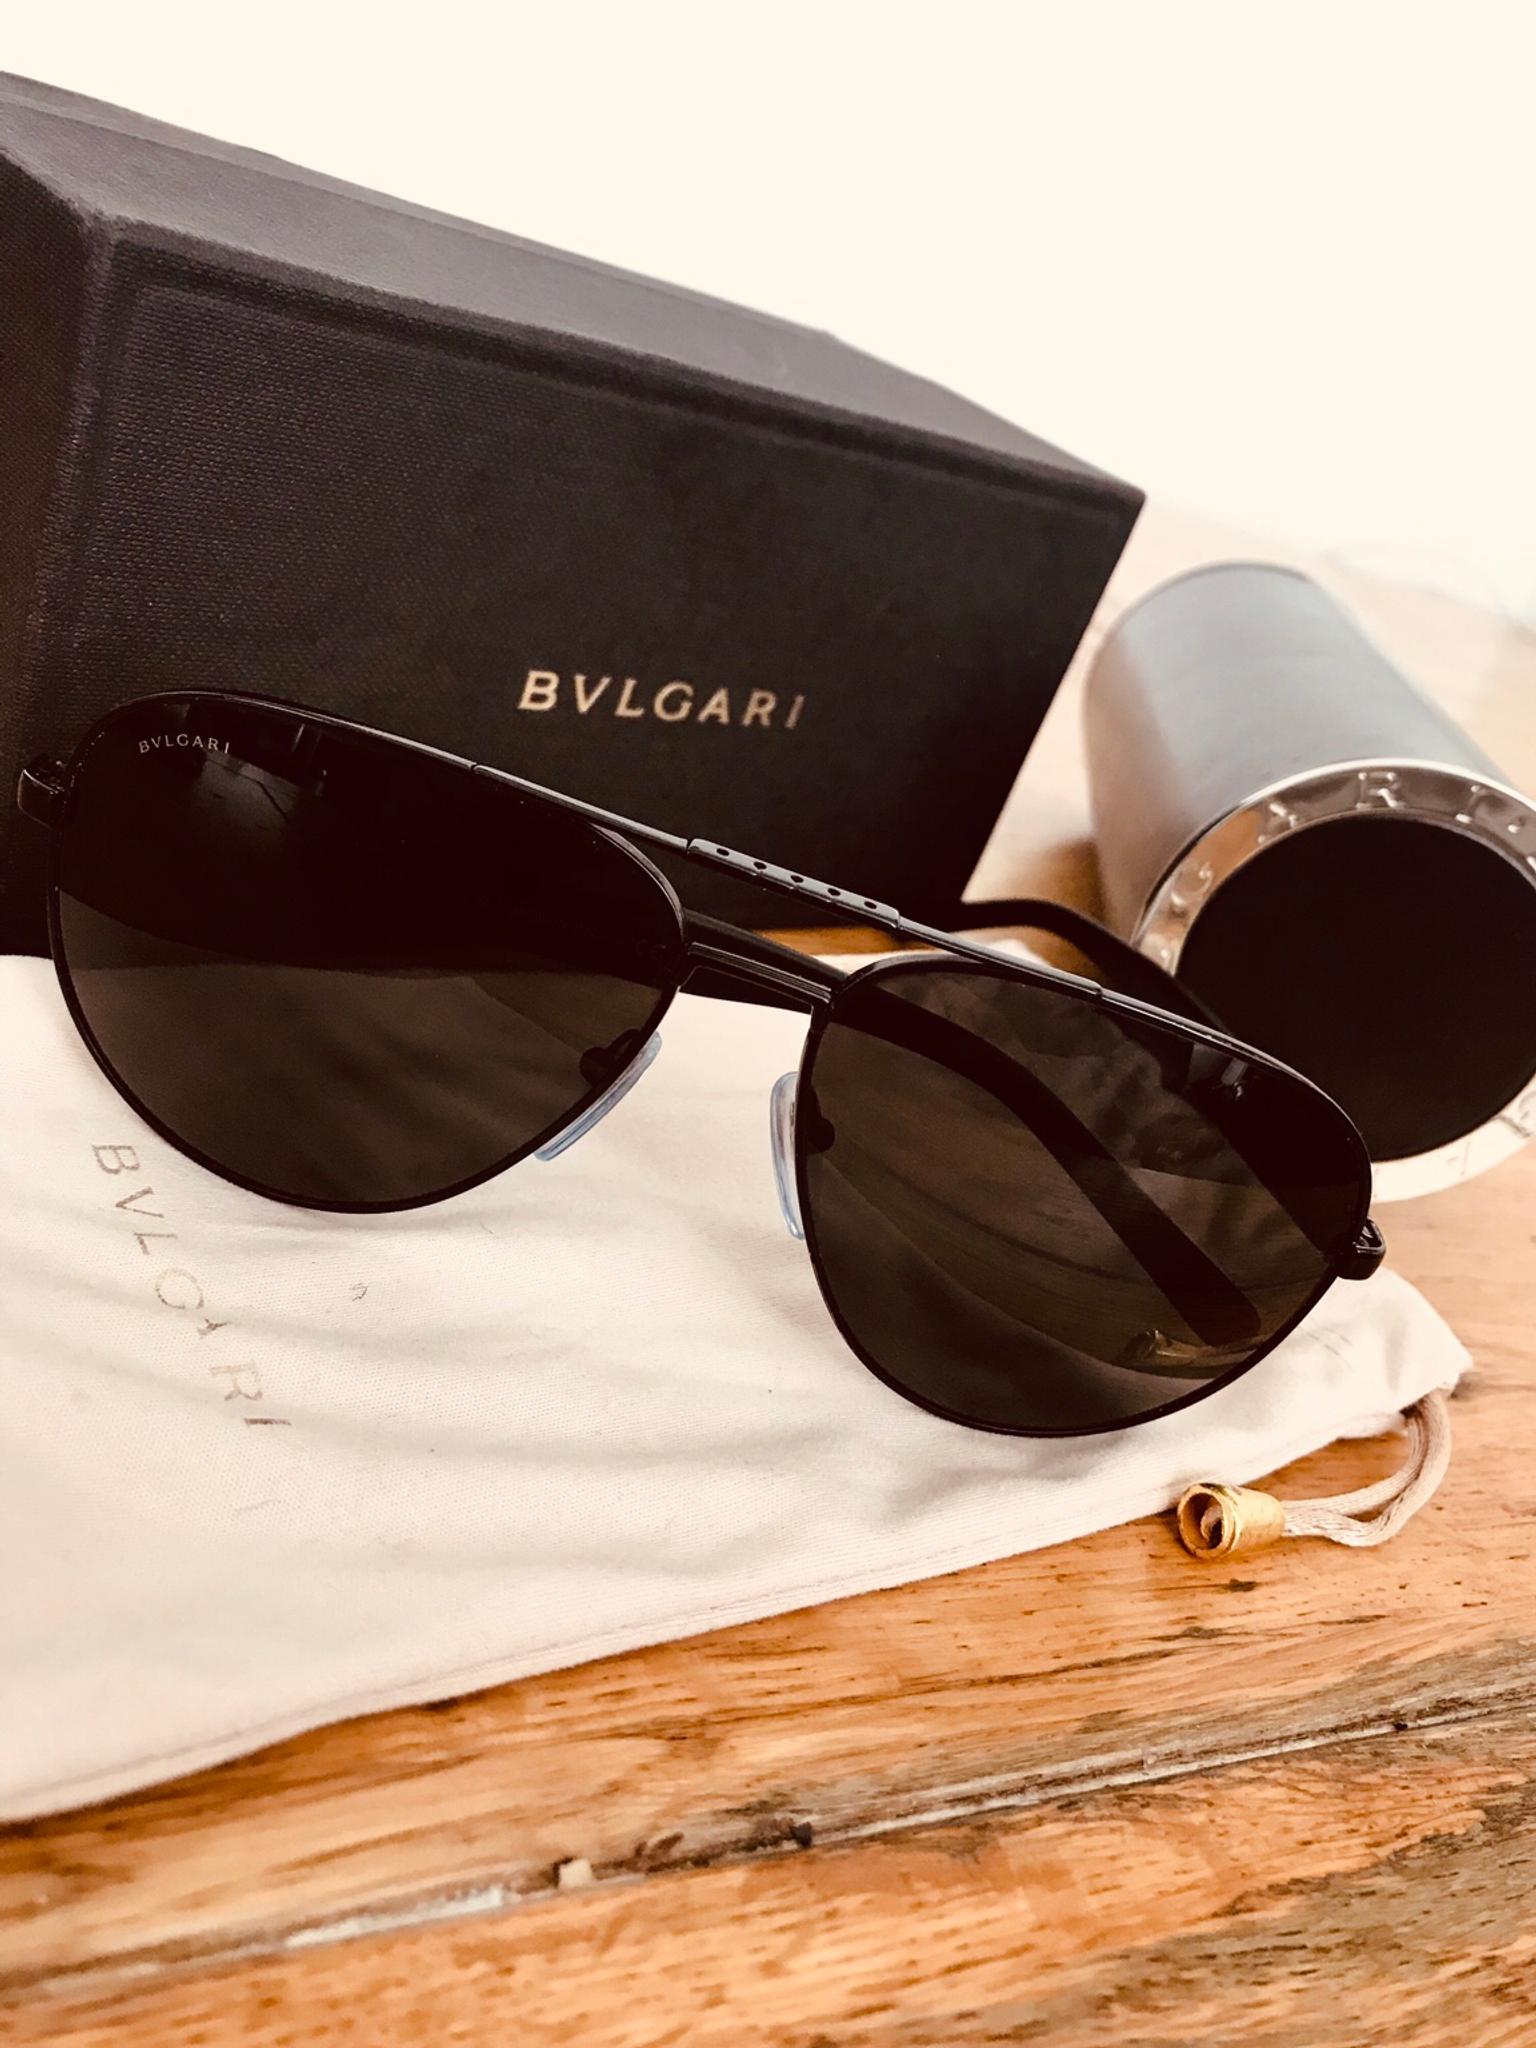 bvlgari sunglasses brand